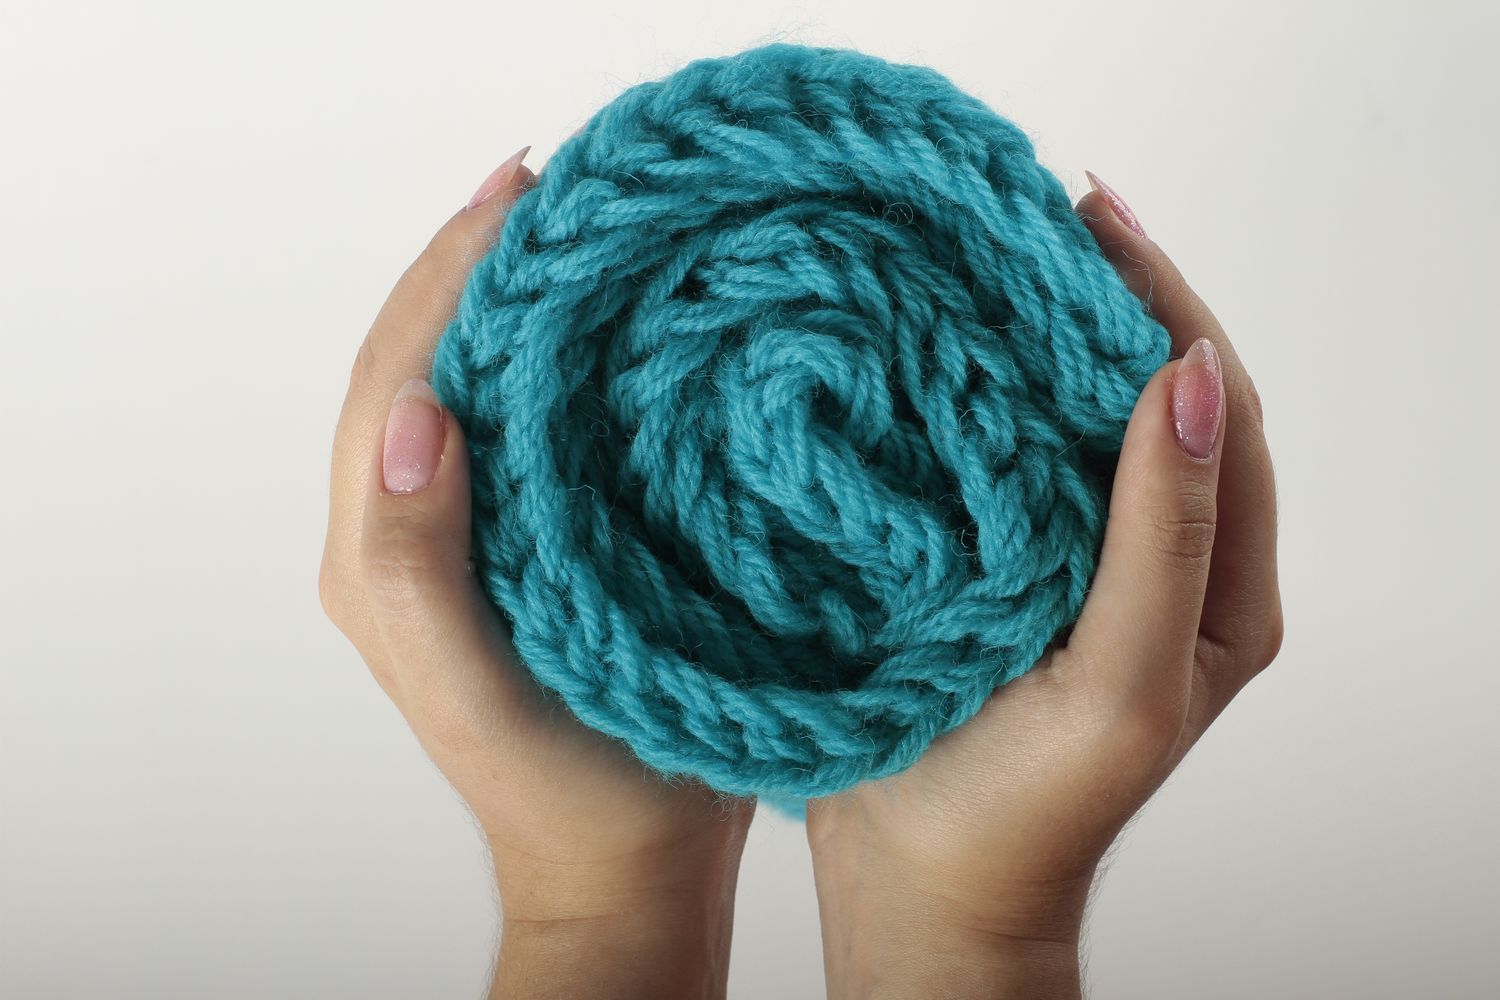 Écharpe bleue faite main Vêtement femme tricotée en laine chaude Idée cadeau photo 4